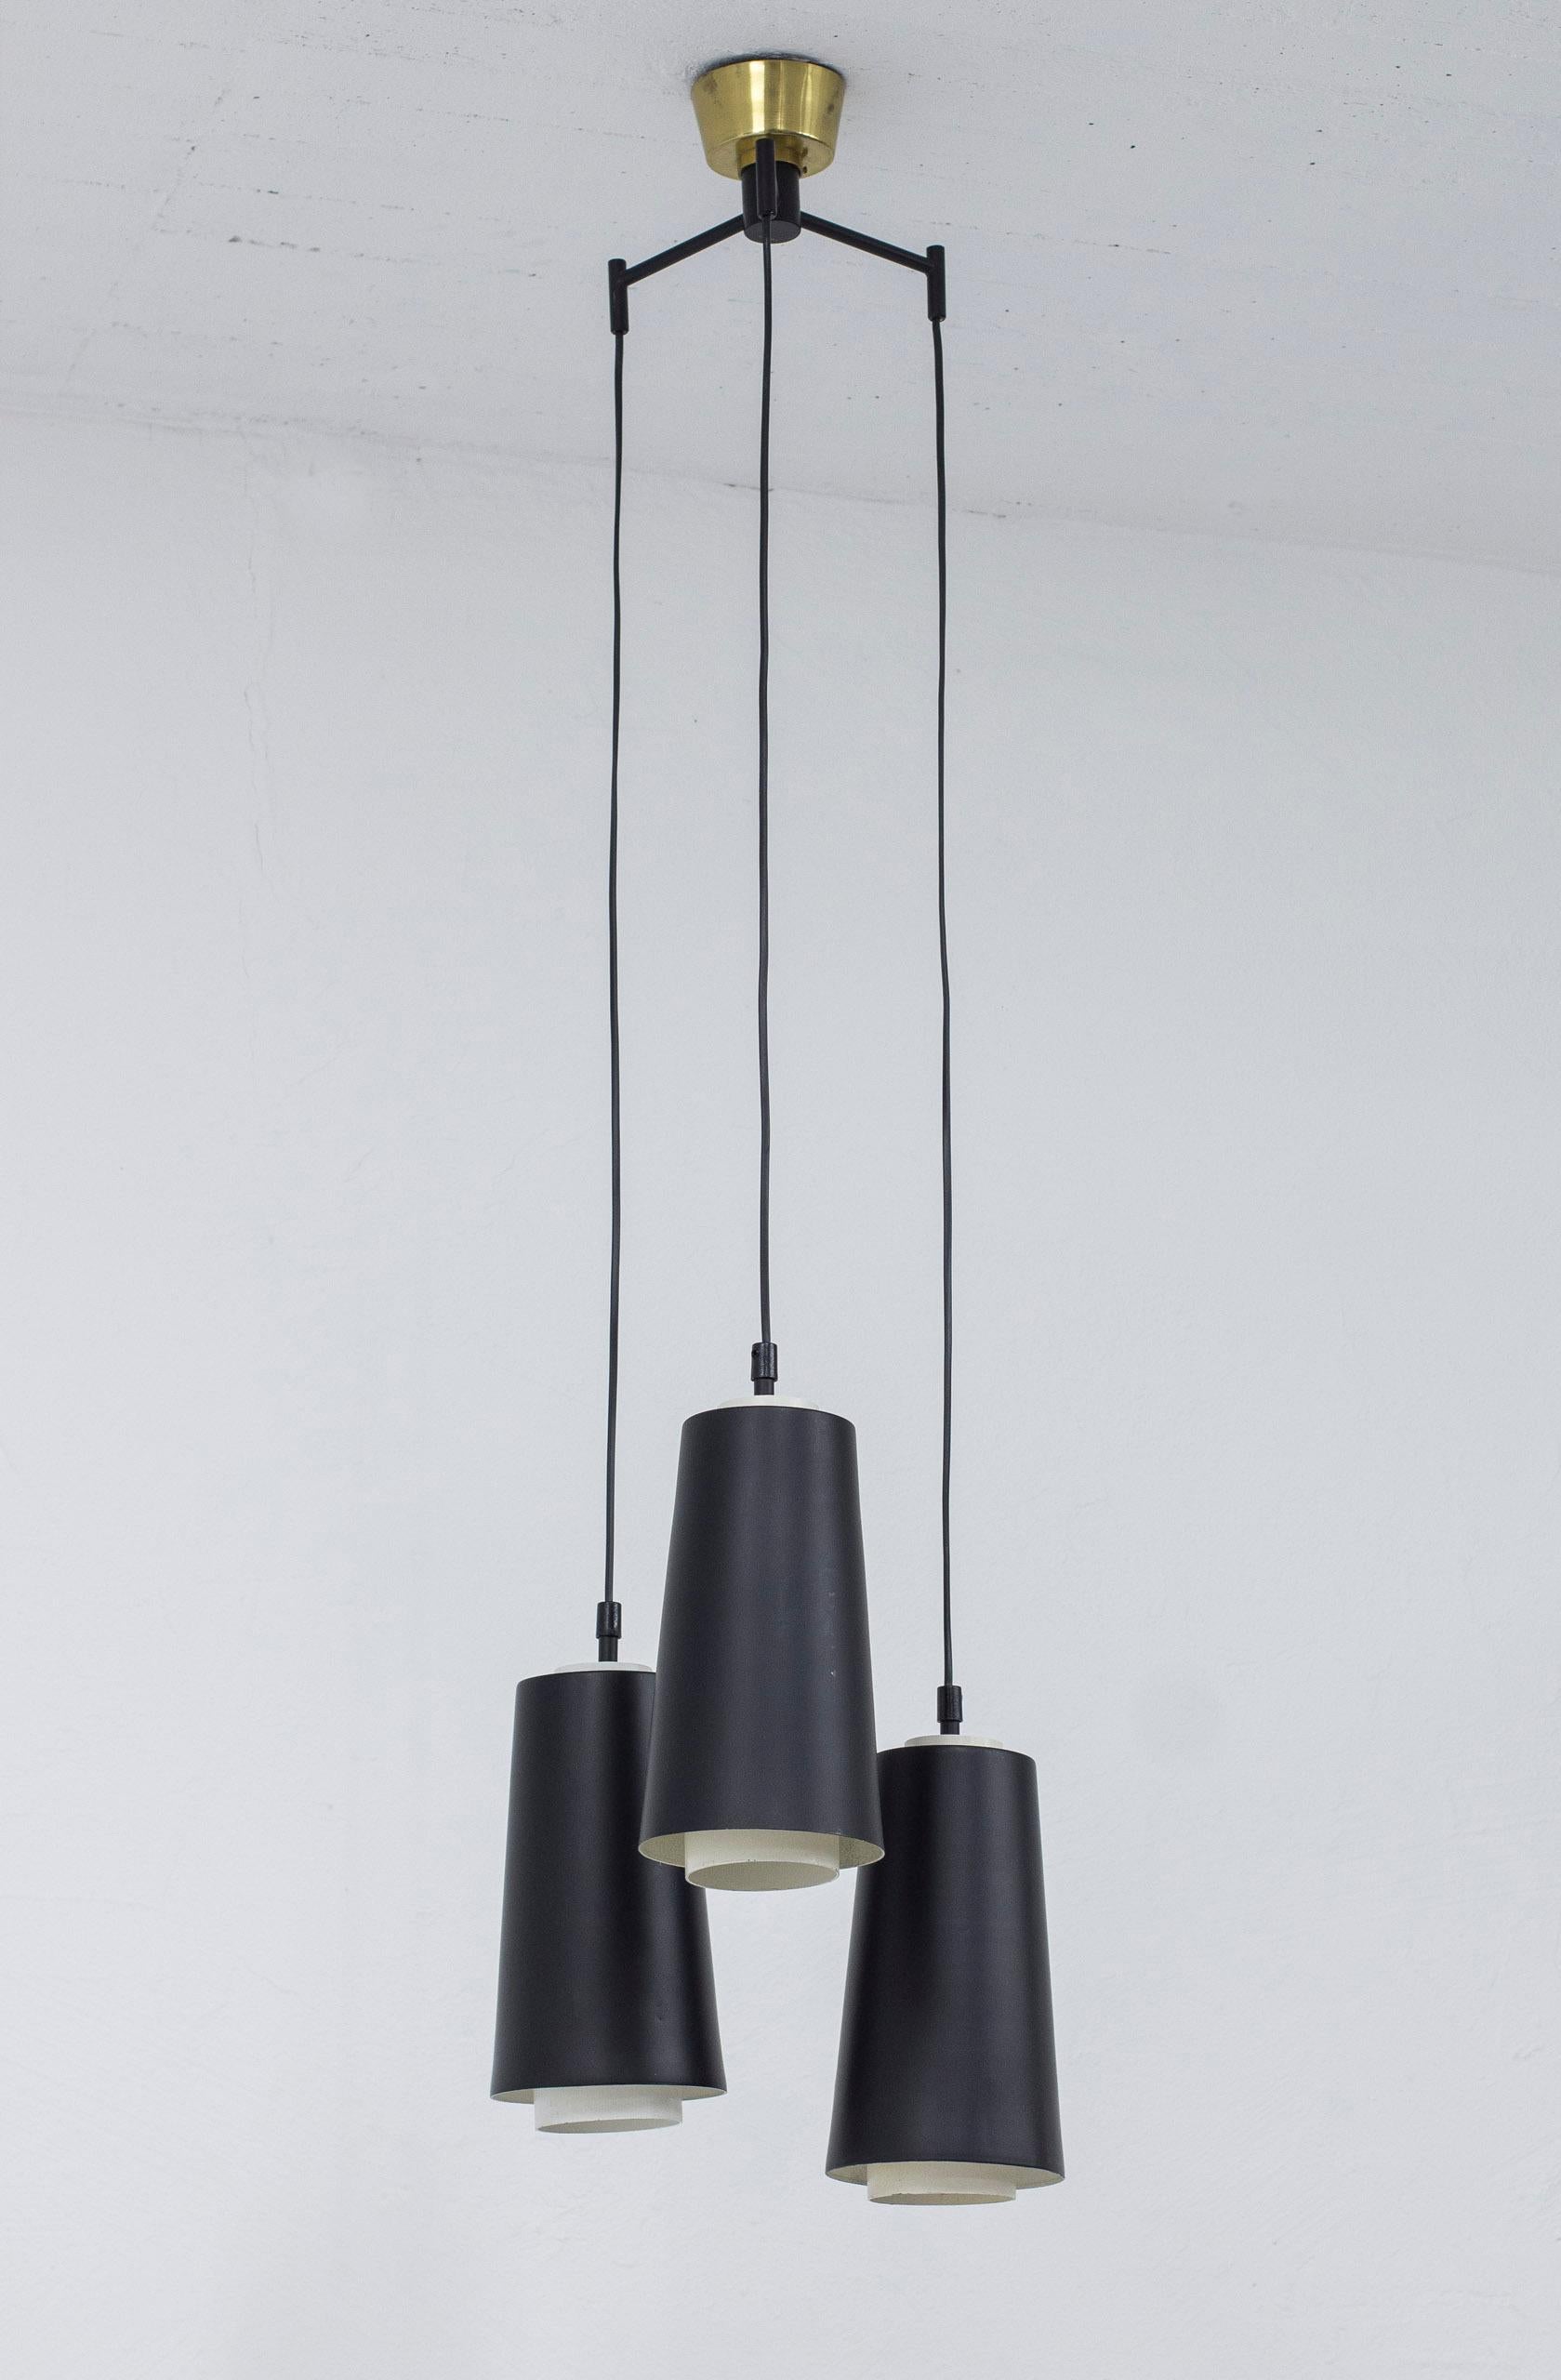 Lampe suspendue Trippel produite en Suède par Luco. Fabriqué dans les années 1950. Fabriqué en aluminium laqué et en acier. Fixation au plafond en laiton. Bon état vintage avec usure liée à l'âge et patine d'utilisation.

 

Designer :